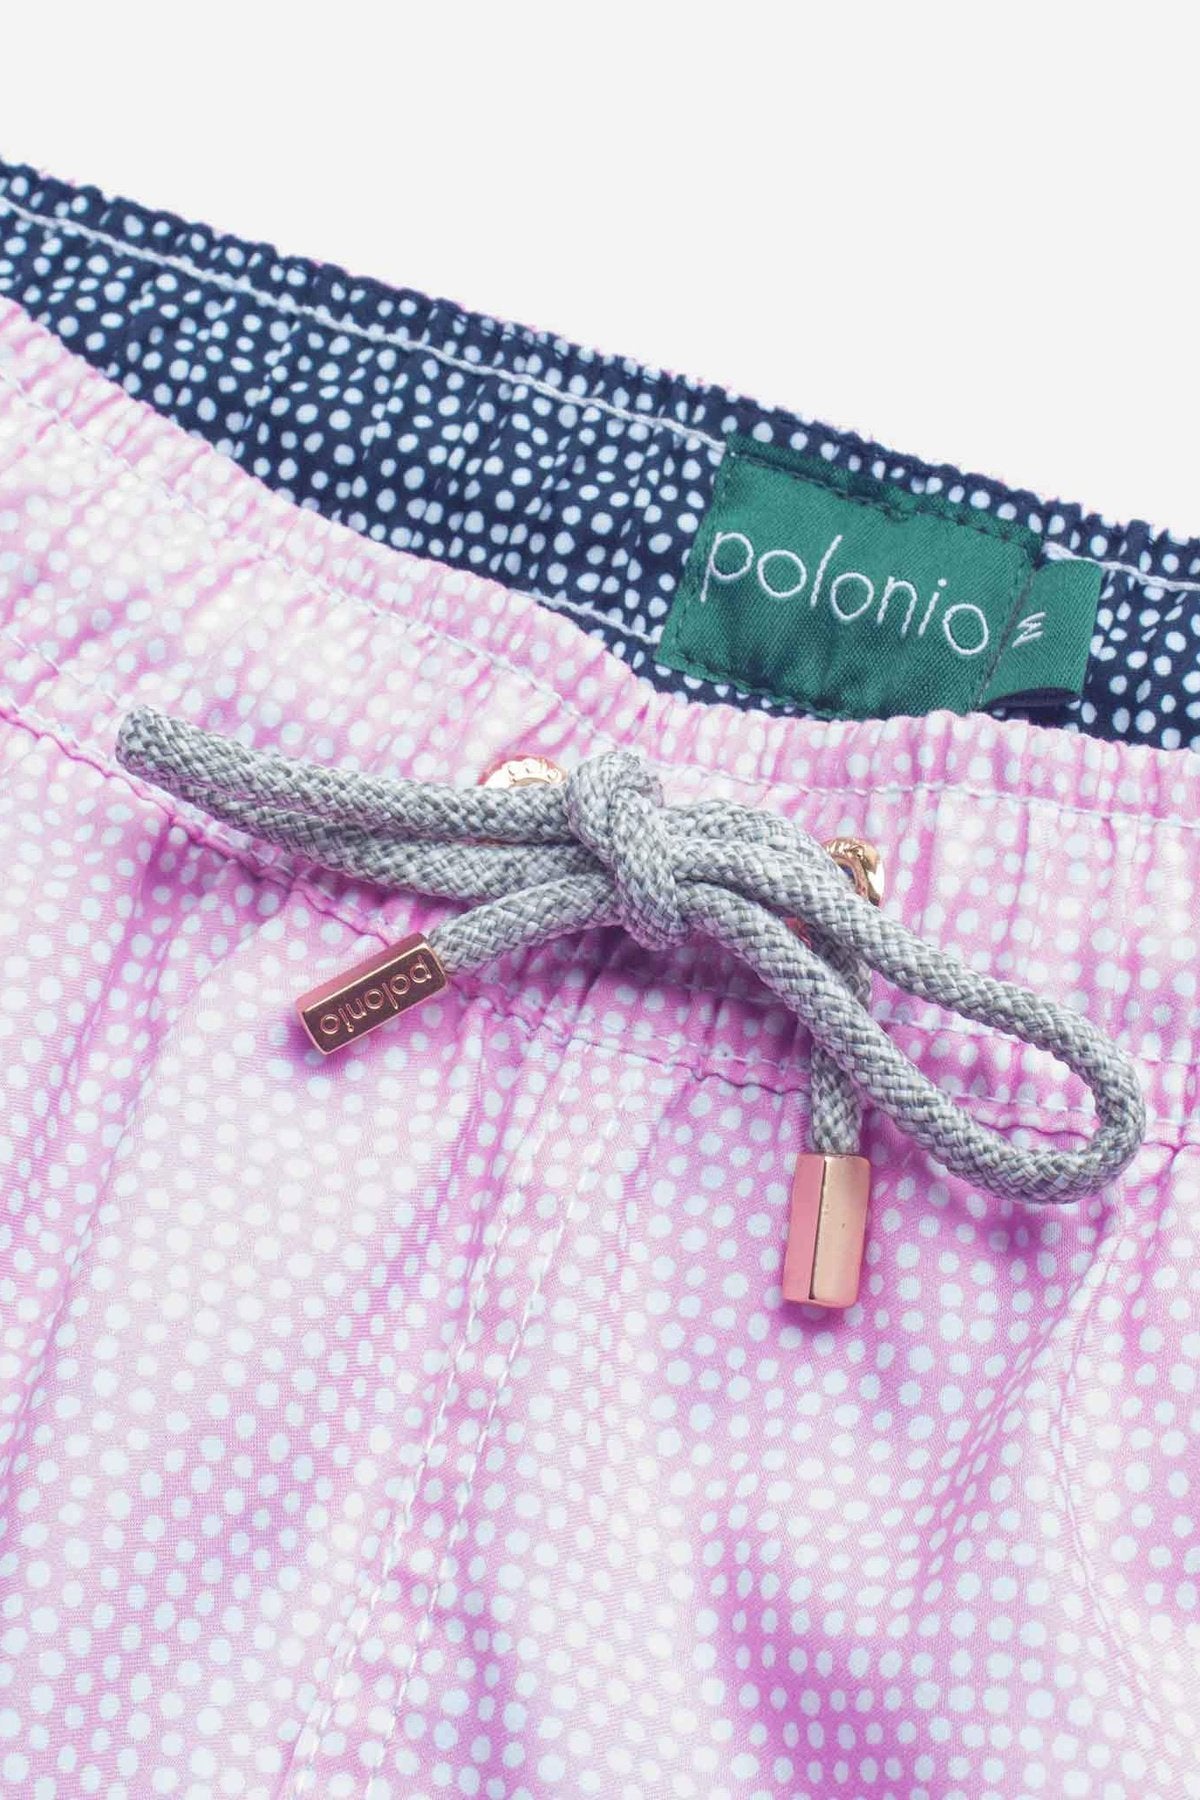 Pink Dots Swim Trunks - Polonio